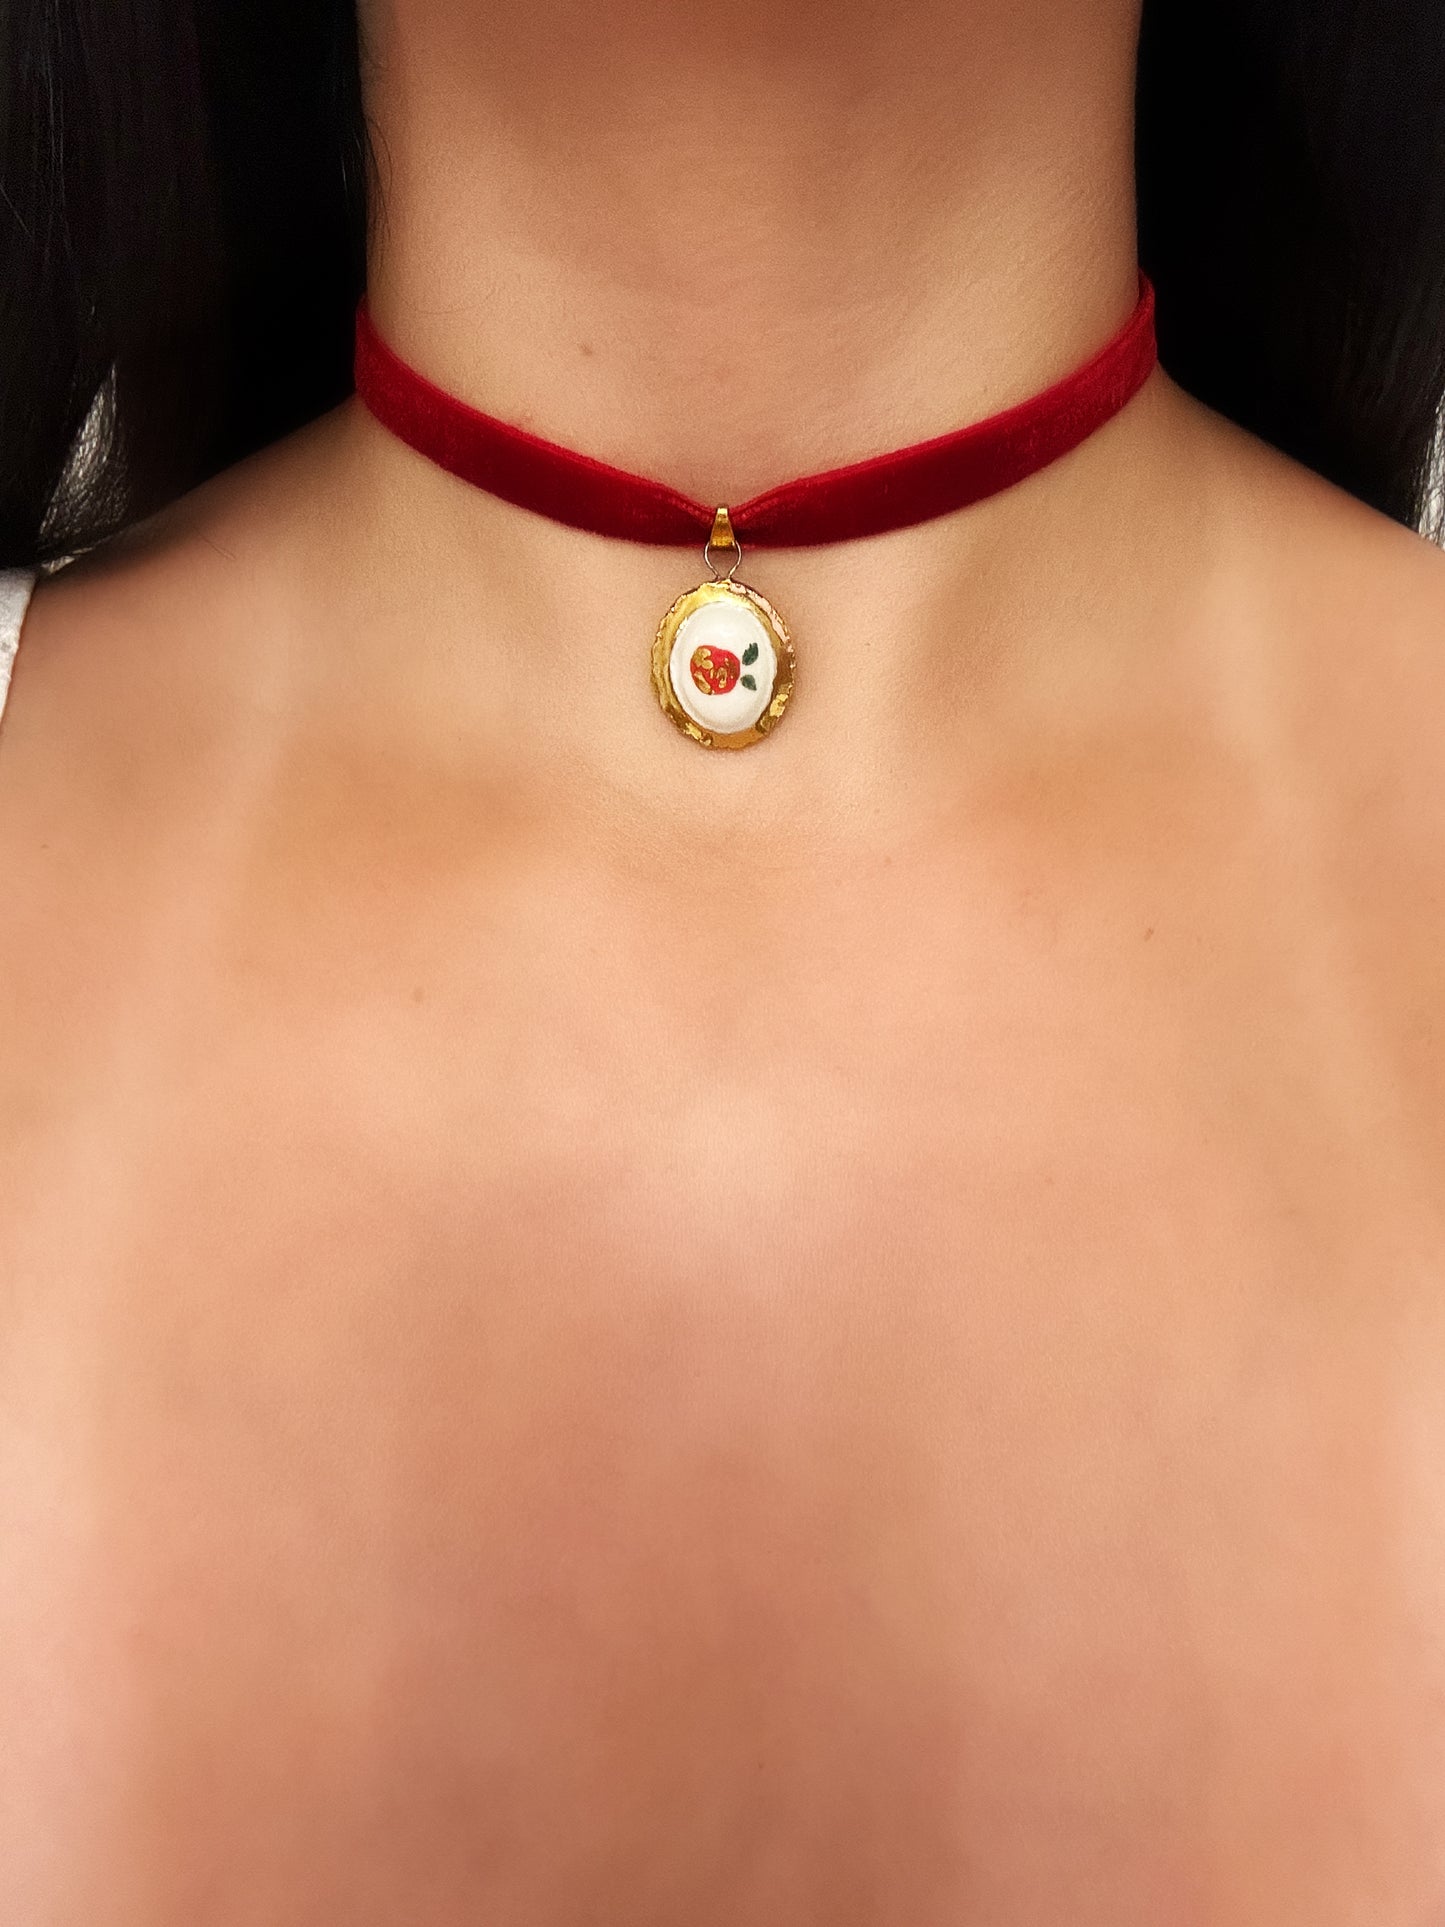 enchanted rose necklace | 22k gold lustre